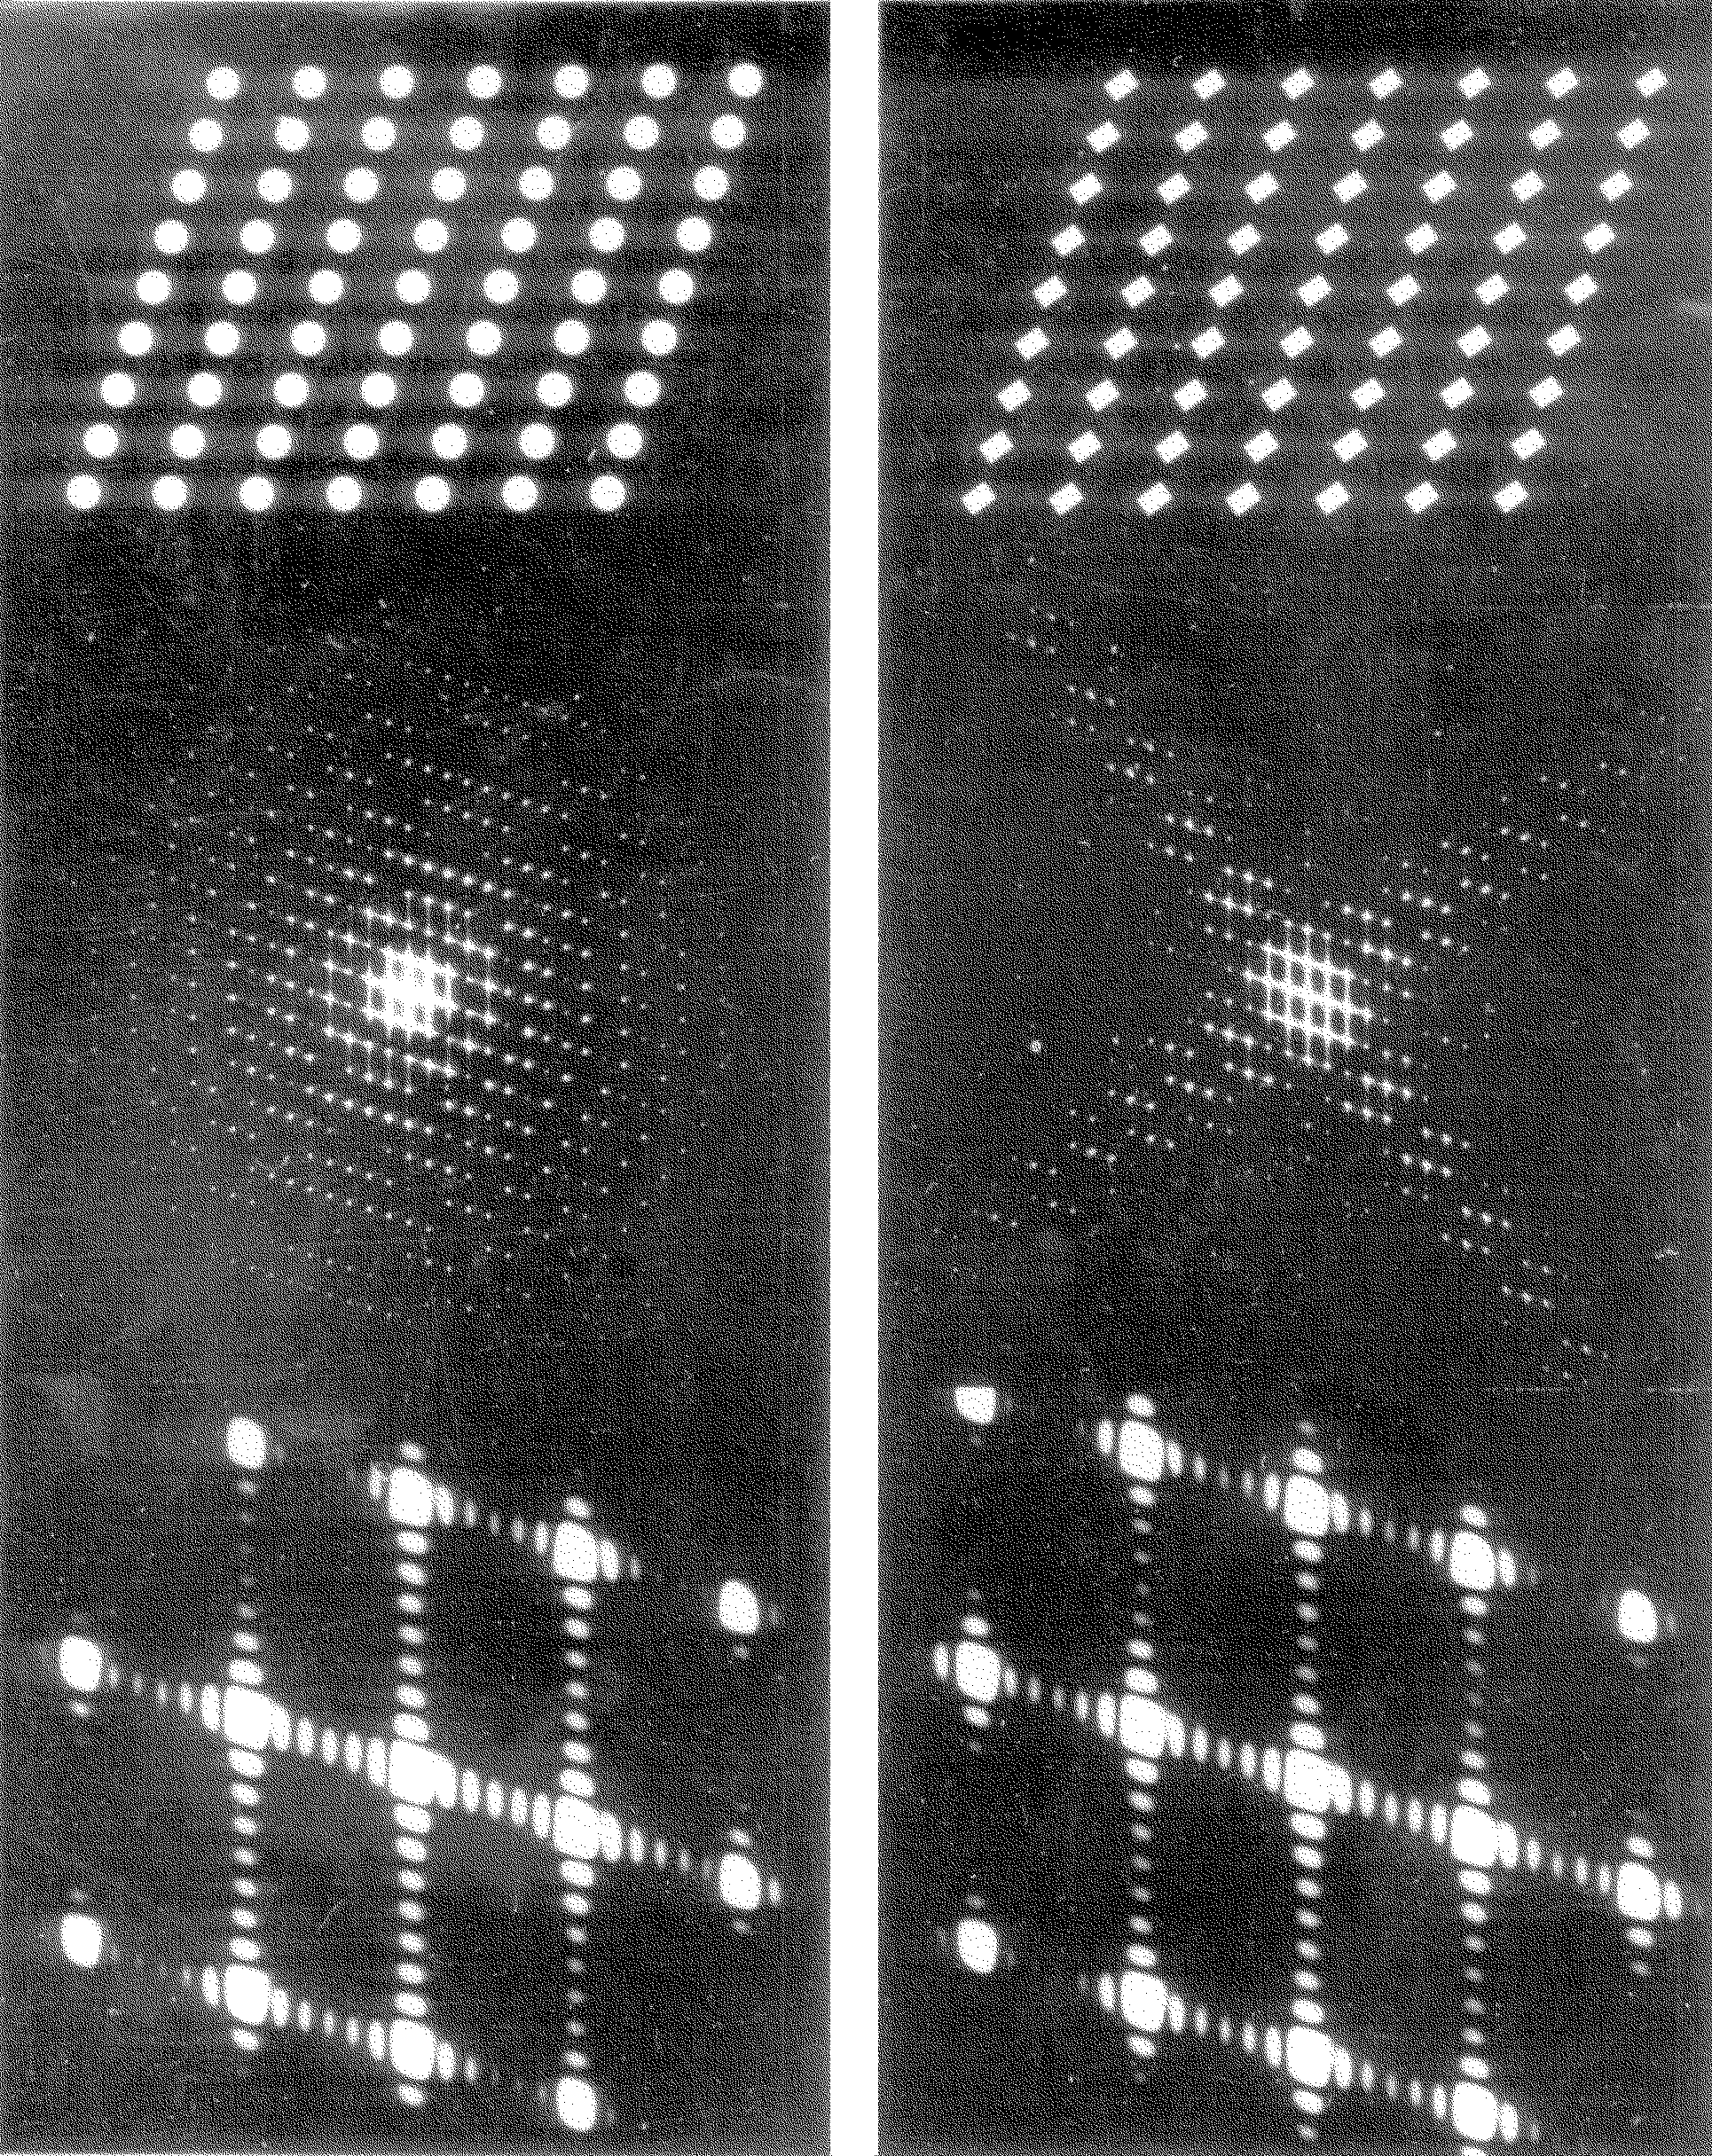 12 Obrázek 8: Fraunhoferova difrakce na dvojrozměrné mřížce. V horní části obrázku je táž dvojrozměrná mřížka tvořená jednou kruhovými, jednou obdélníkovými otvory.